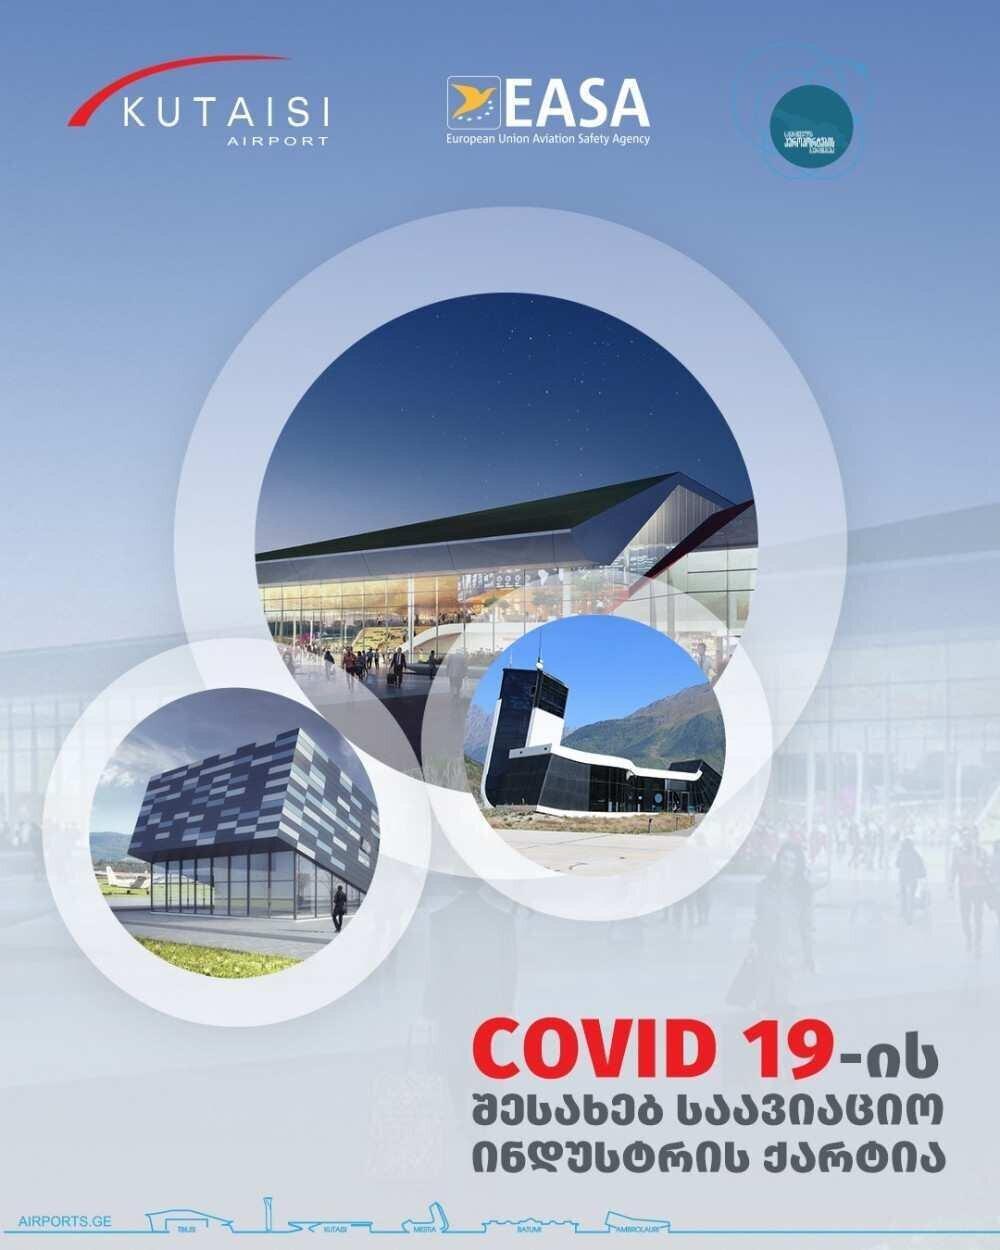 საქართველოს აეროპორტების გაერთიანება COVID 19-ის შესახებ საავიაციო ინდუსტრიის ქარტიას შეუერთდა 